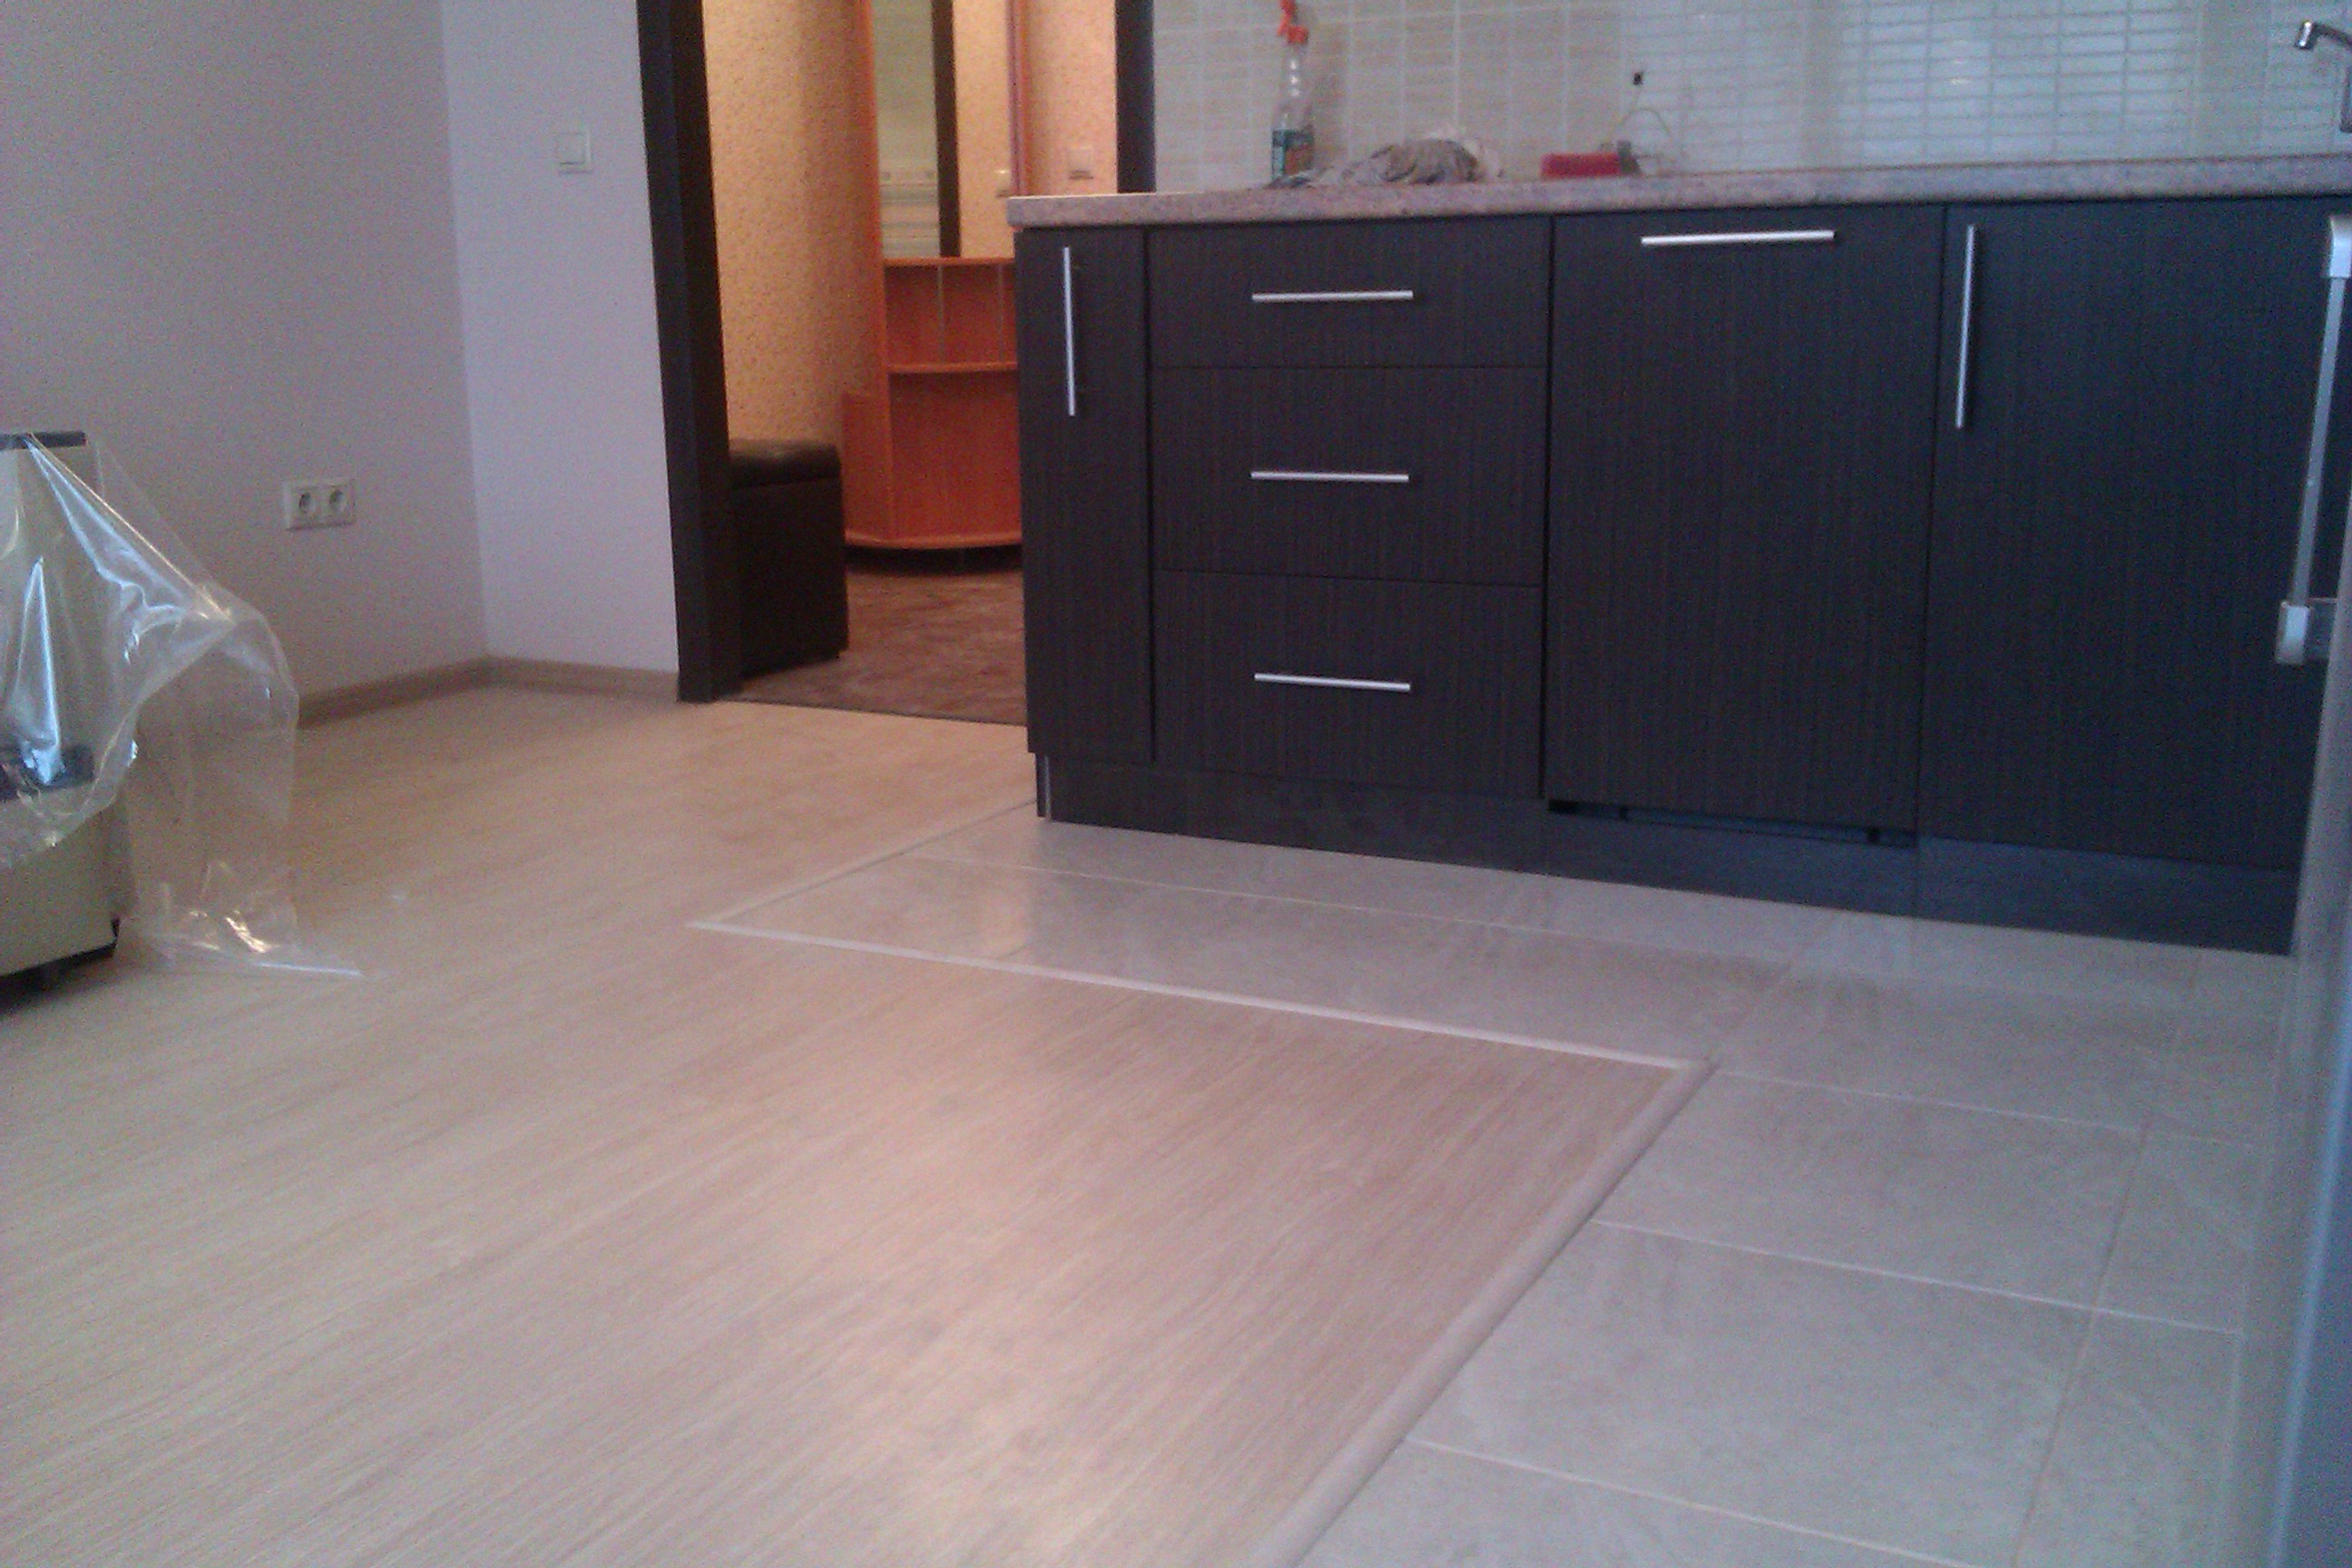 Комбинированный пол из плитки и ламината на кухне и в коридоре